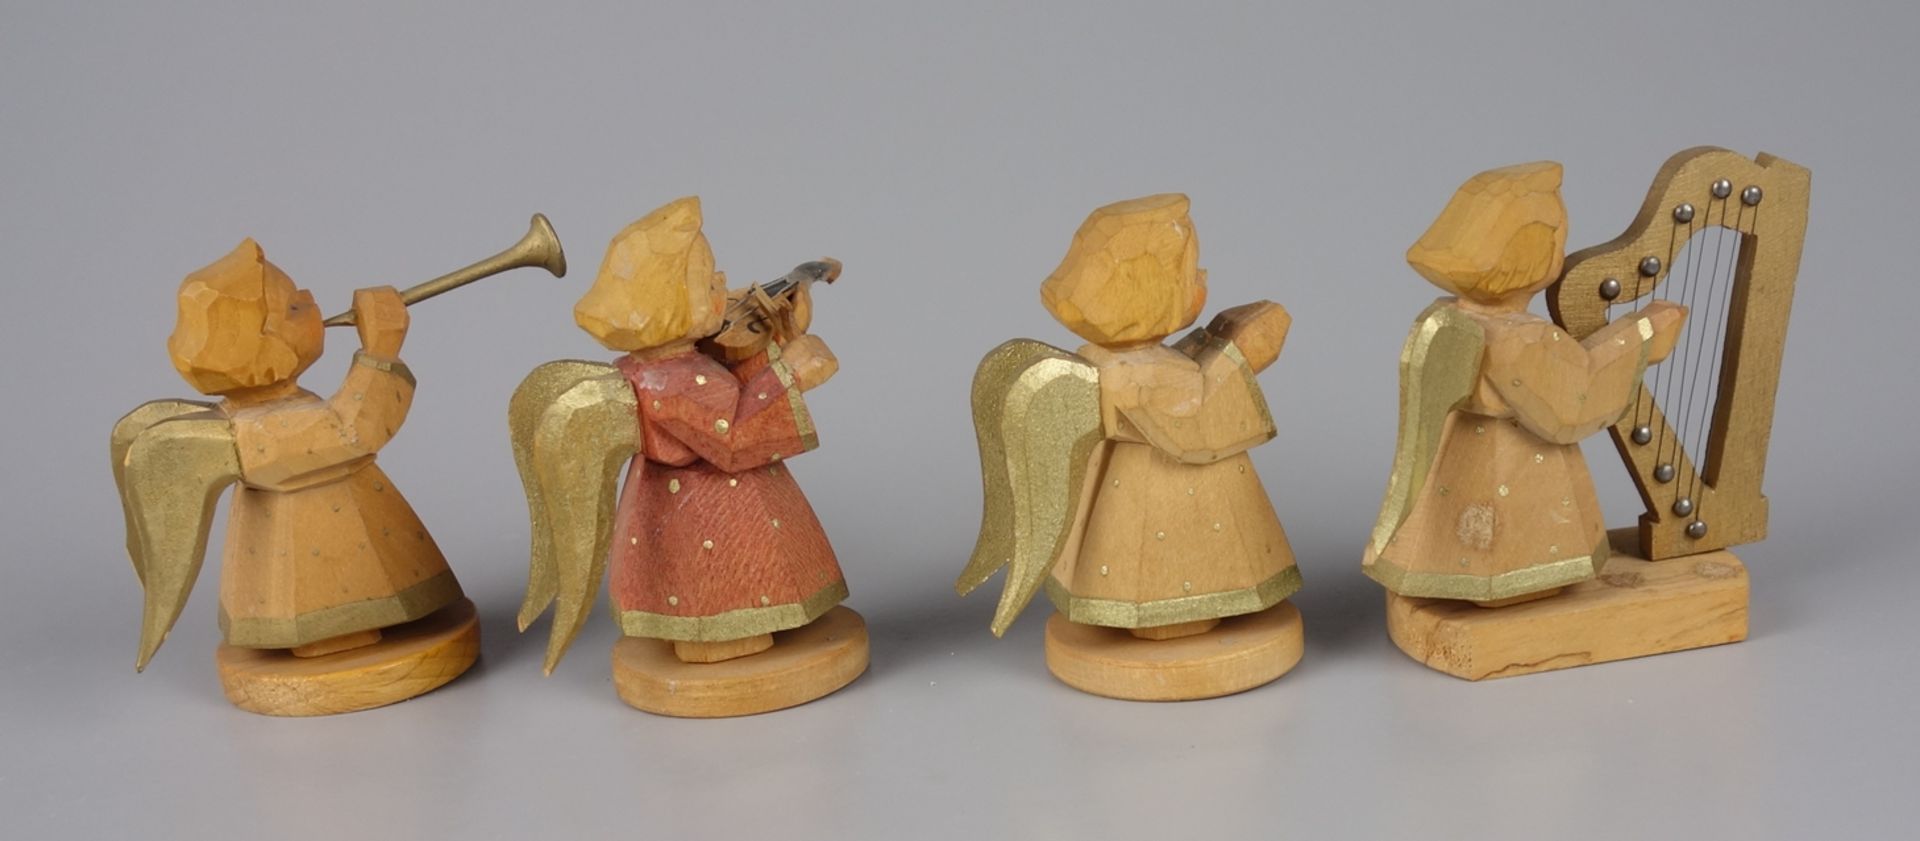 4 Angels from Angel Chapel, Schumann & Wagner, Grünhainichen, Erzgebirge, 1st half 20th century - Image 2 of 3